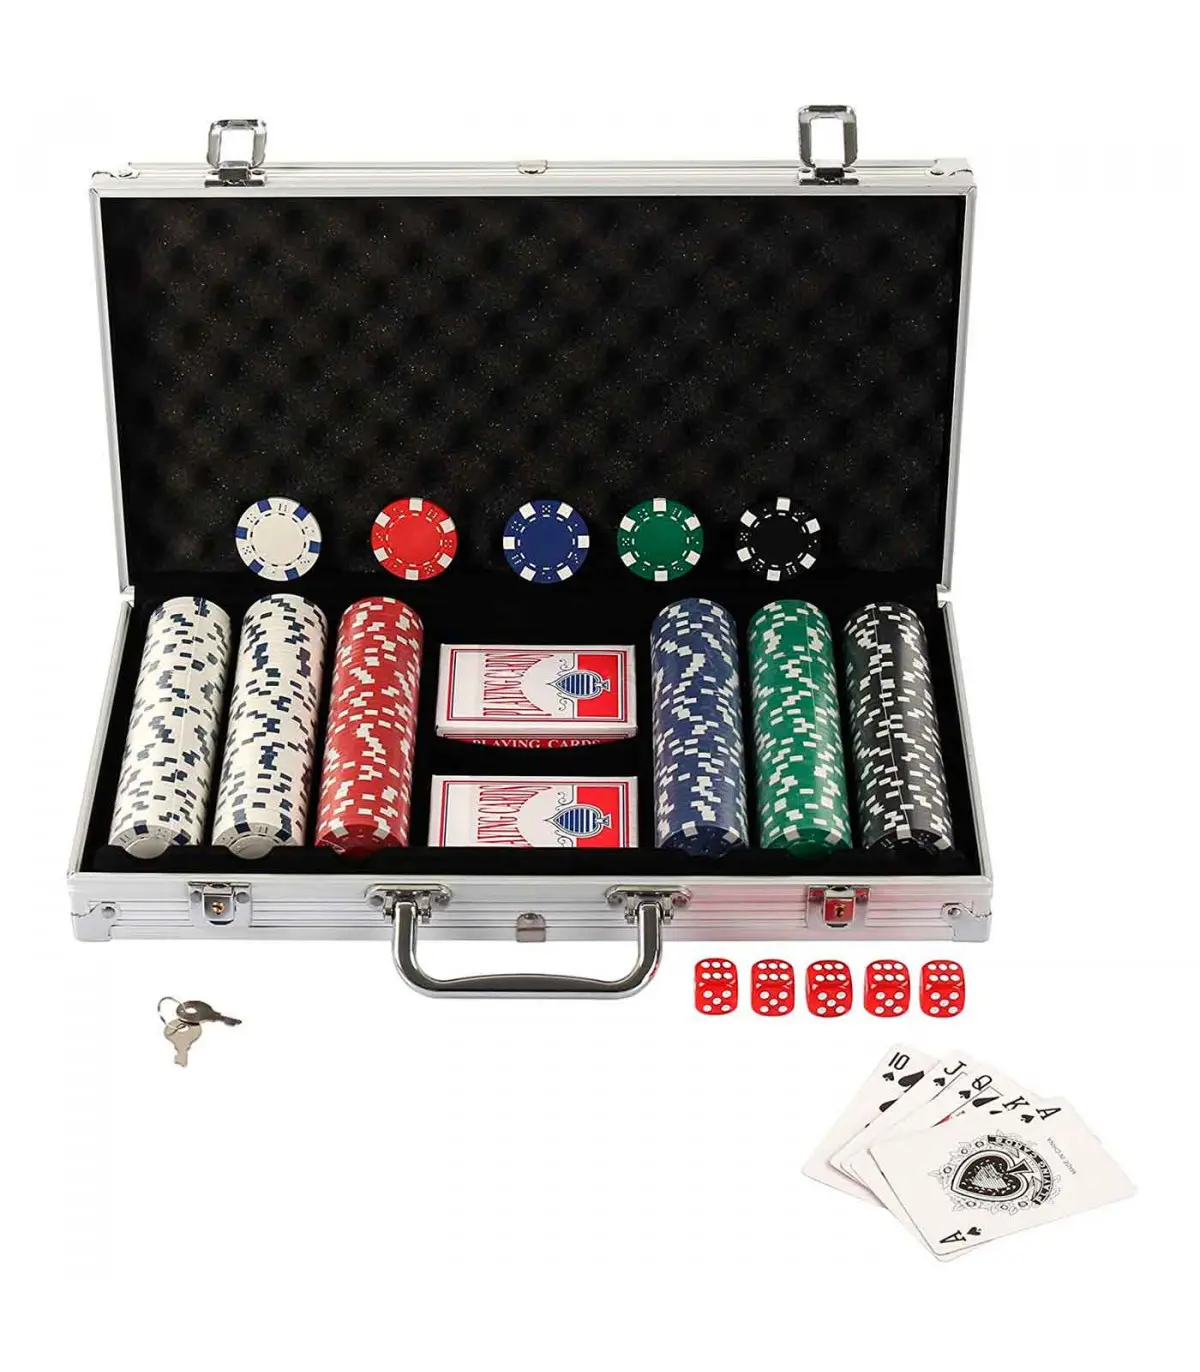 juego de cartas con fichas - Cuál es el valor de las fichas de casino